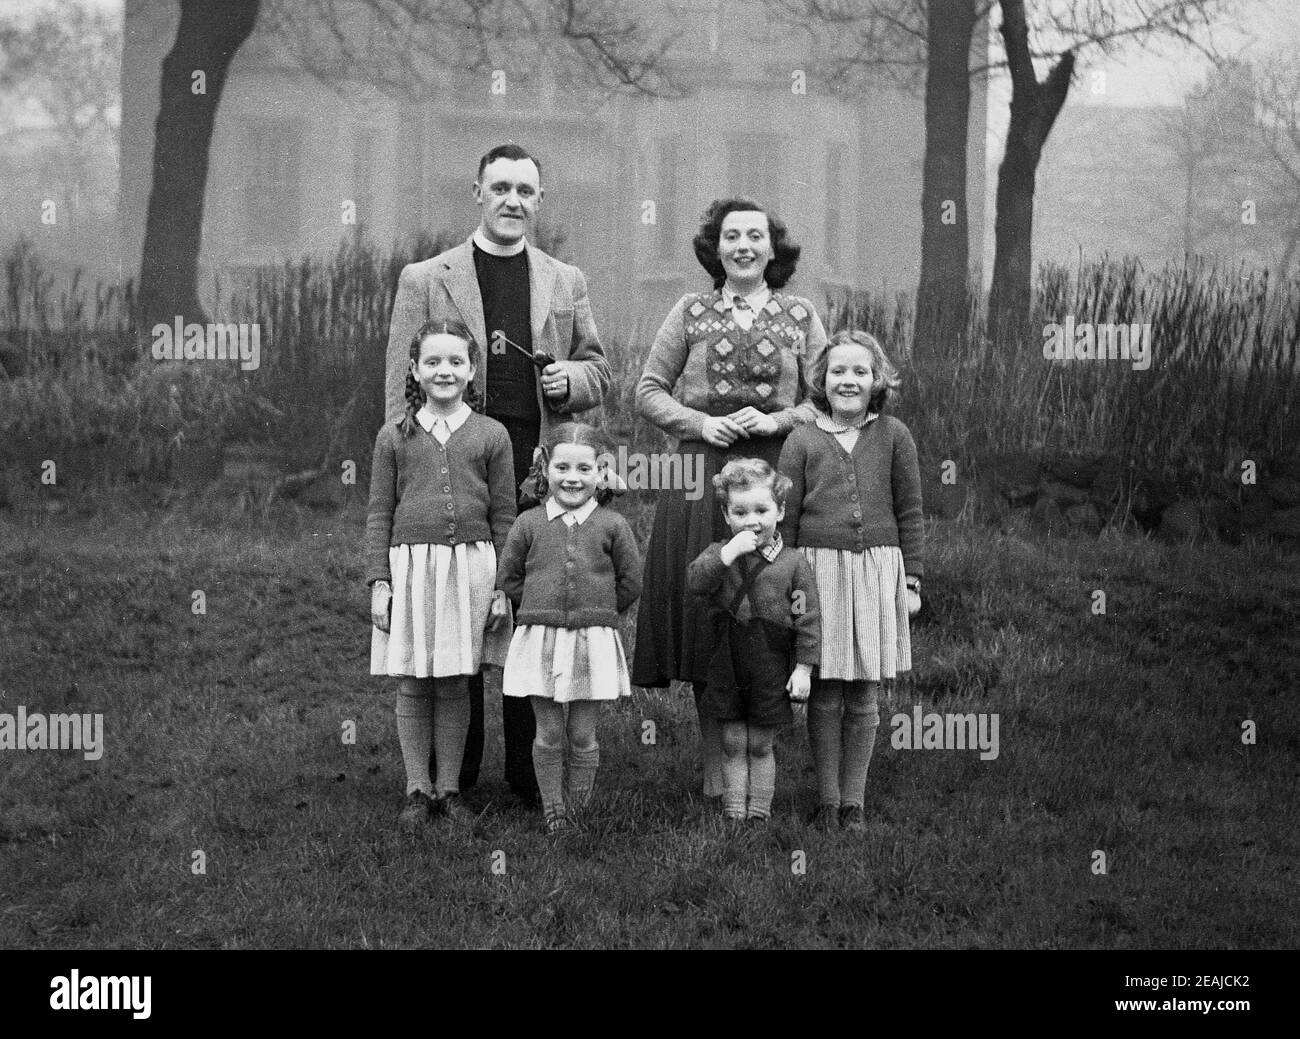 1950s, historisch, ein Familienfoto, draußen auf Gras auf dem Kirchplatz stehend, ein Vikar mit seiner Frau und vier kleinen Kindern mit kleinen Mädchen in der Schuluniform., England, Großbritannien. Der Vikar, der seinen Bürokragenkragen trägt, hält eine lange Pfeife. Stockfoto